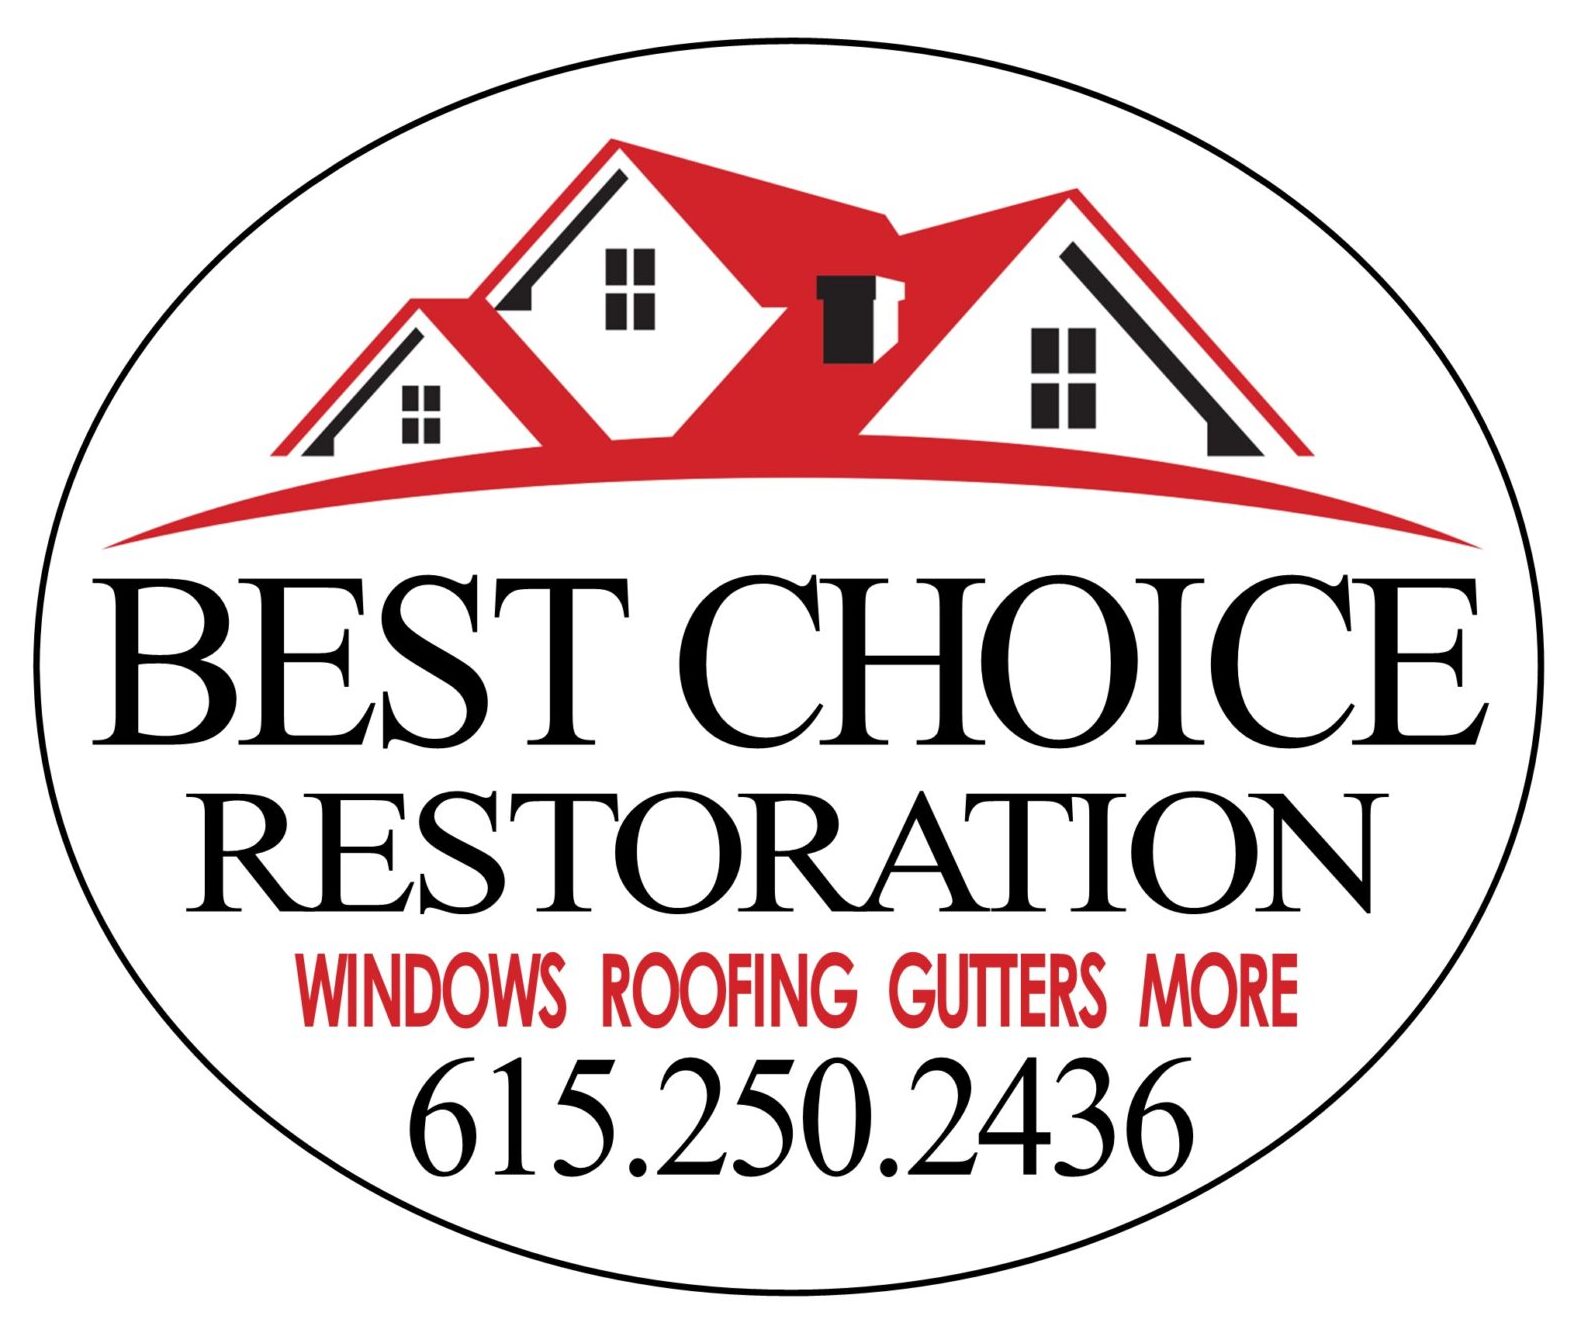 Best Choice Restoration & Best Choice Windows